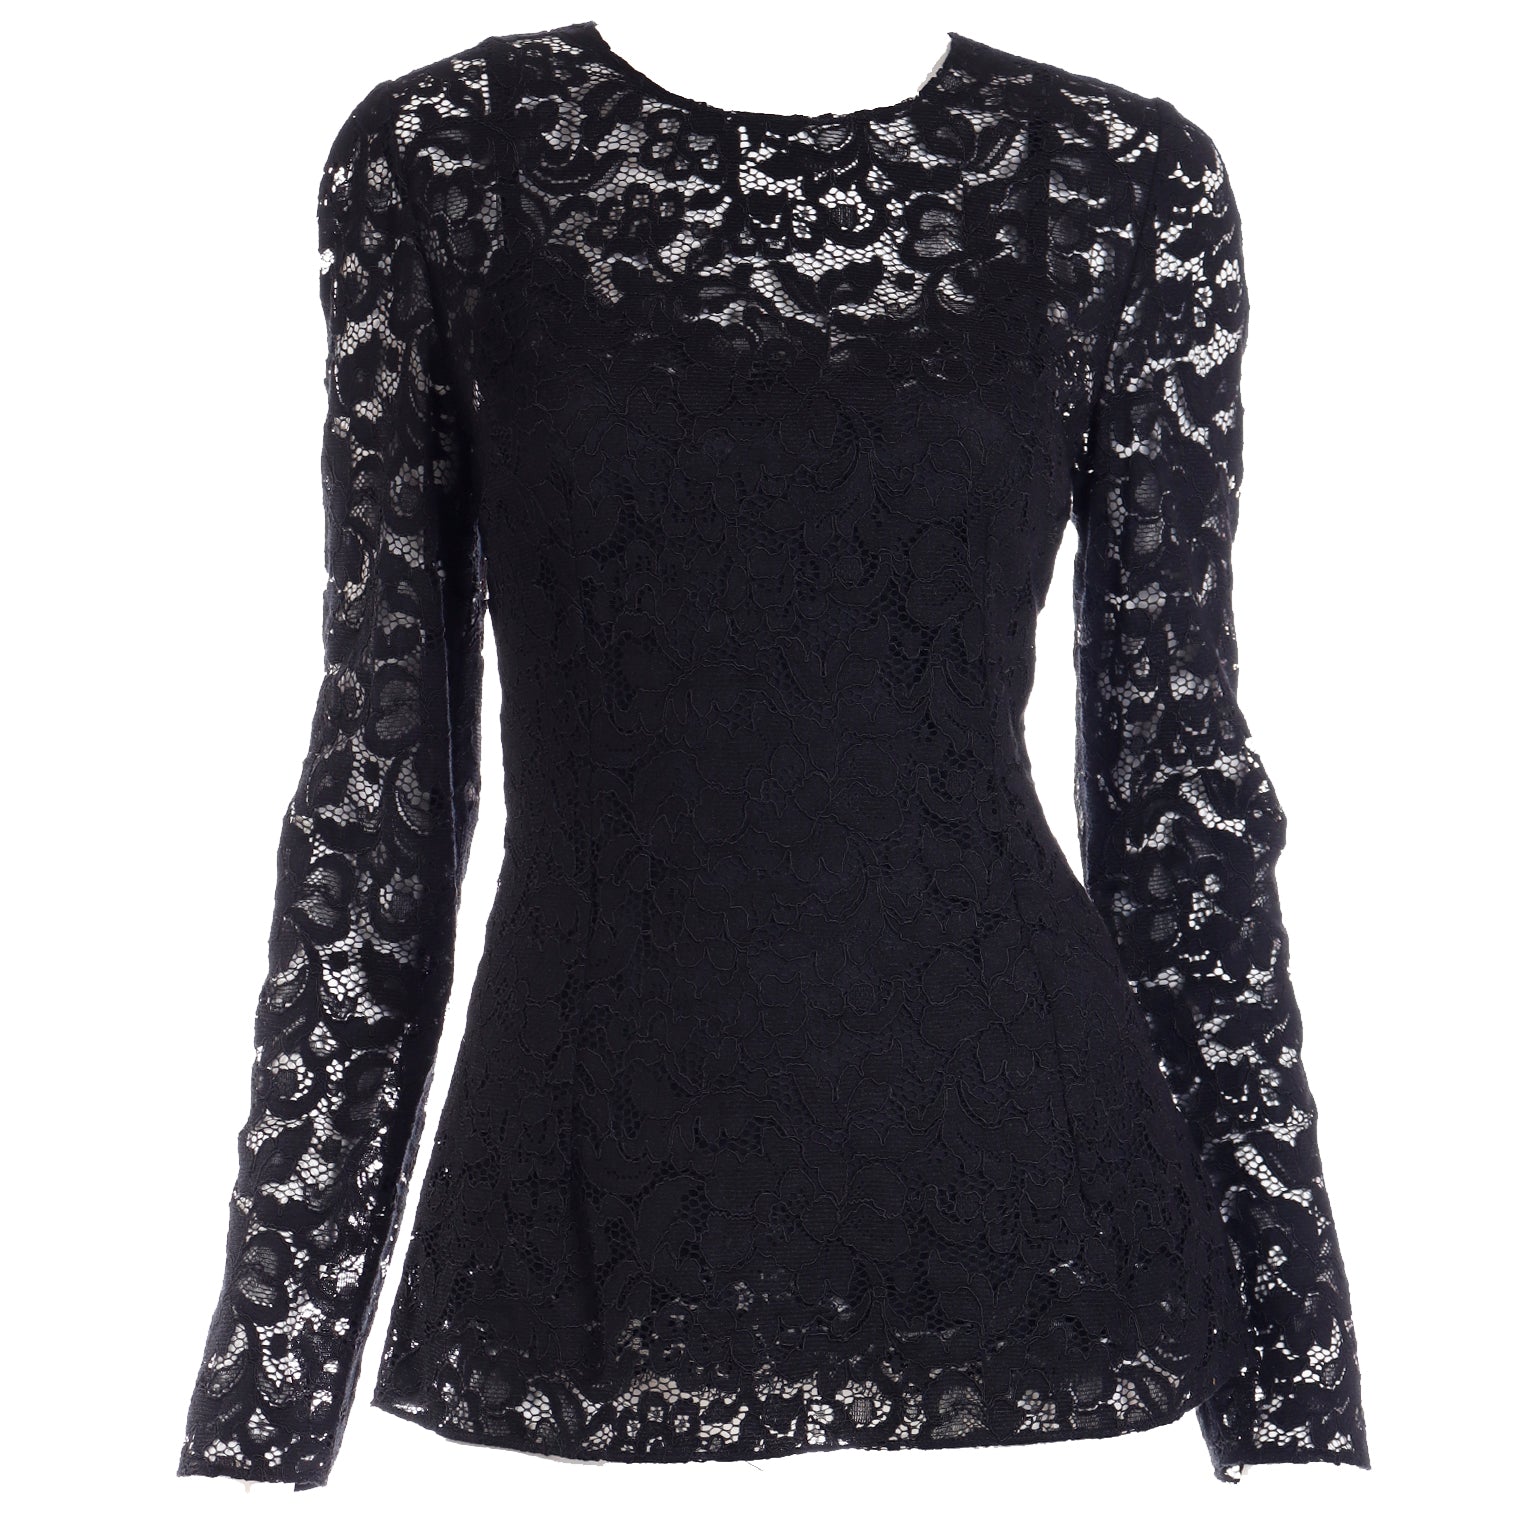 https://shopmodig.com/cdn/shop/products/Dolce-Gabbana-Black-Lace-Long-Sleeve-Top-_MG_6807copy.jpg?v=1663697094